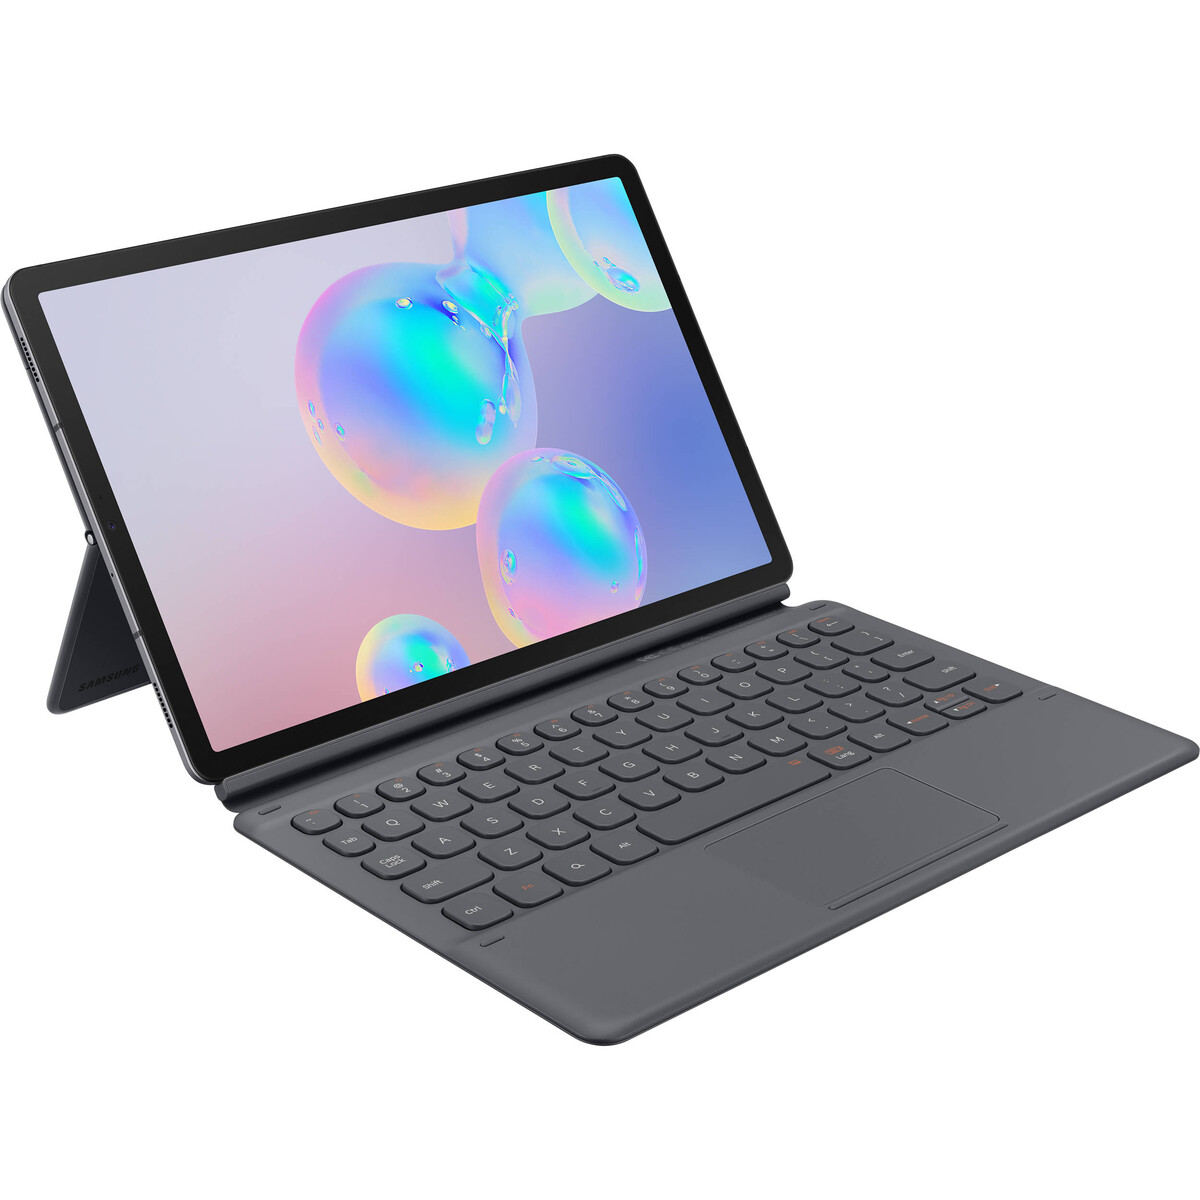 Bañera Intercambiar Casi muerto Samsung prepara una Galaxy Tab S7: nueva tablet profesional con teclado y  lápiz óptico - MuyPymes